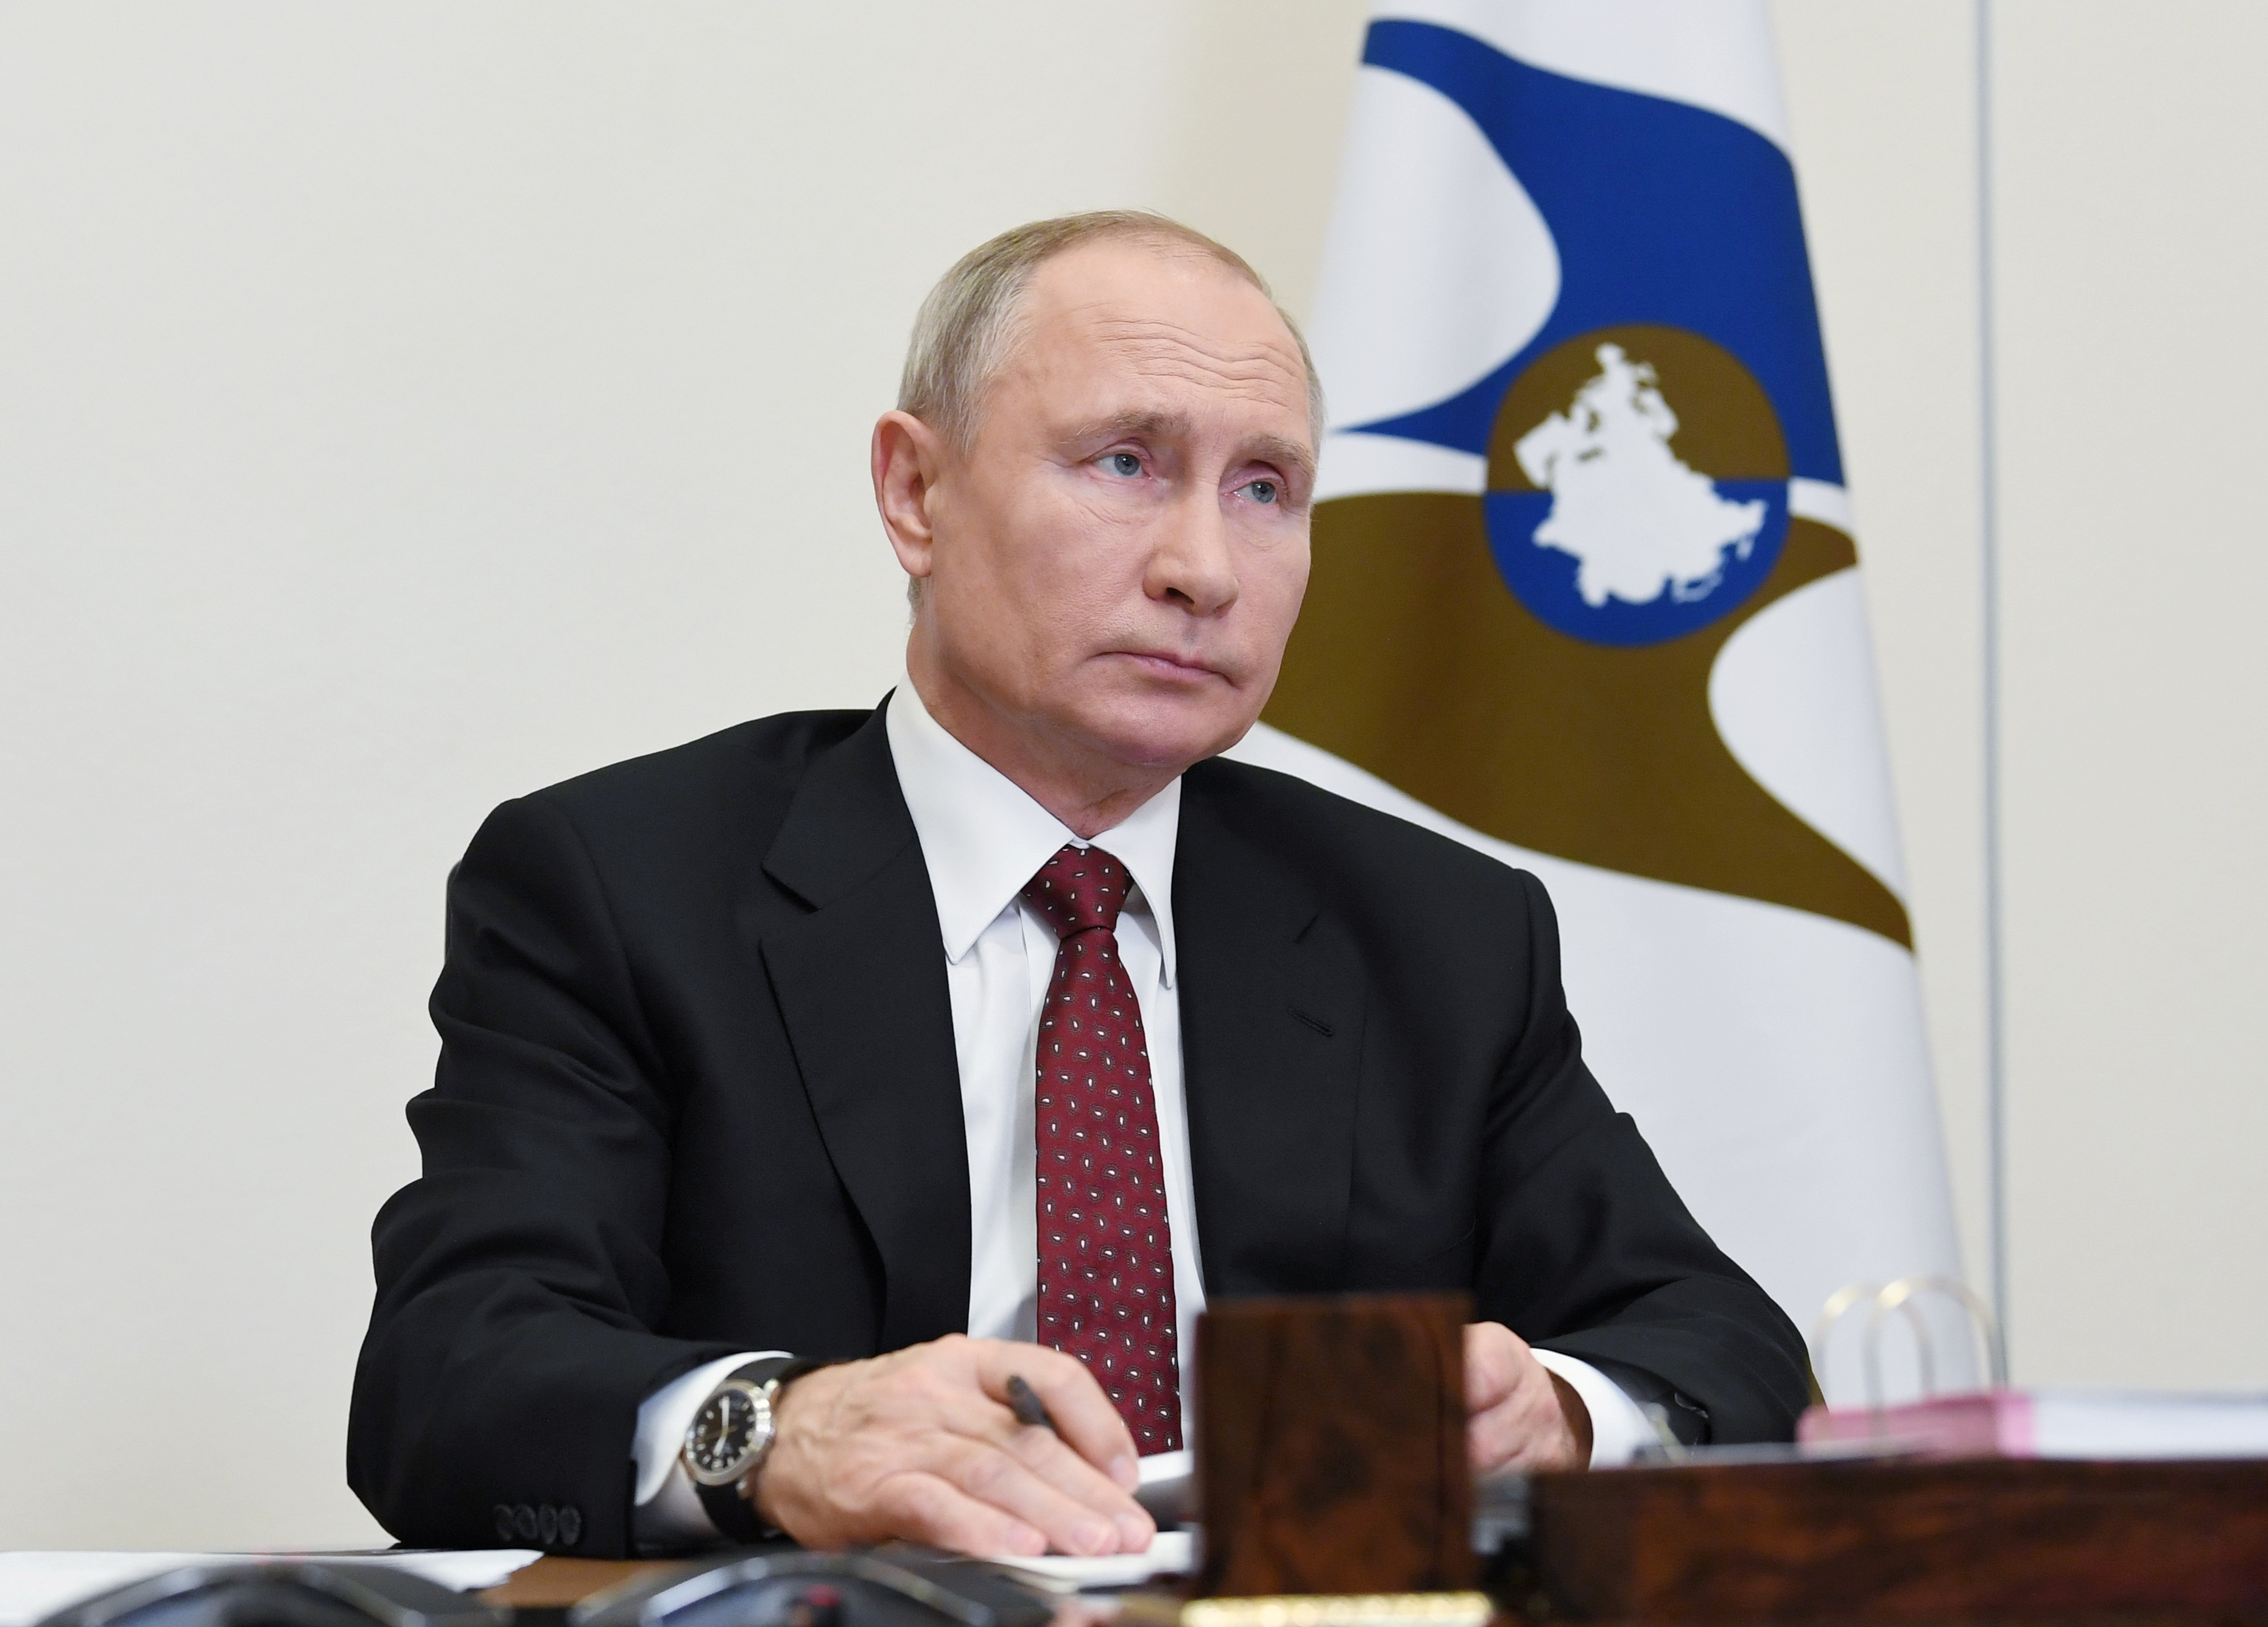 El presidente Vladimir Putin anunció la aprobación de la vacuna Sputnik V para combatir el coronavirus. El mandatario todavía no se inoculó la dosis contra la COVID-19 (Reuters)